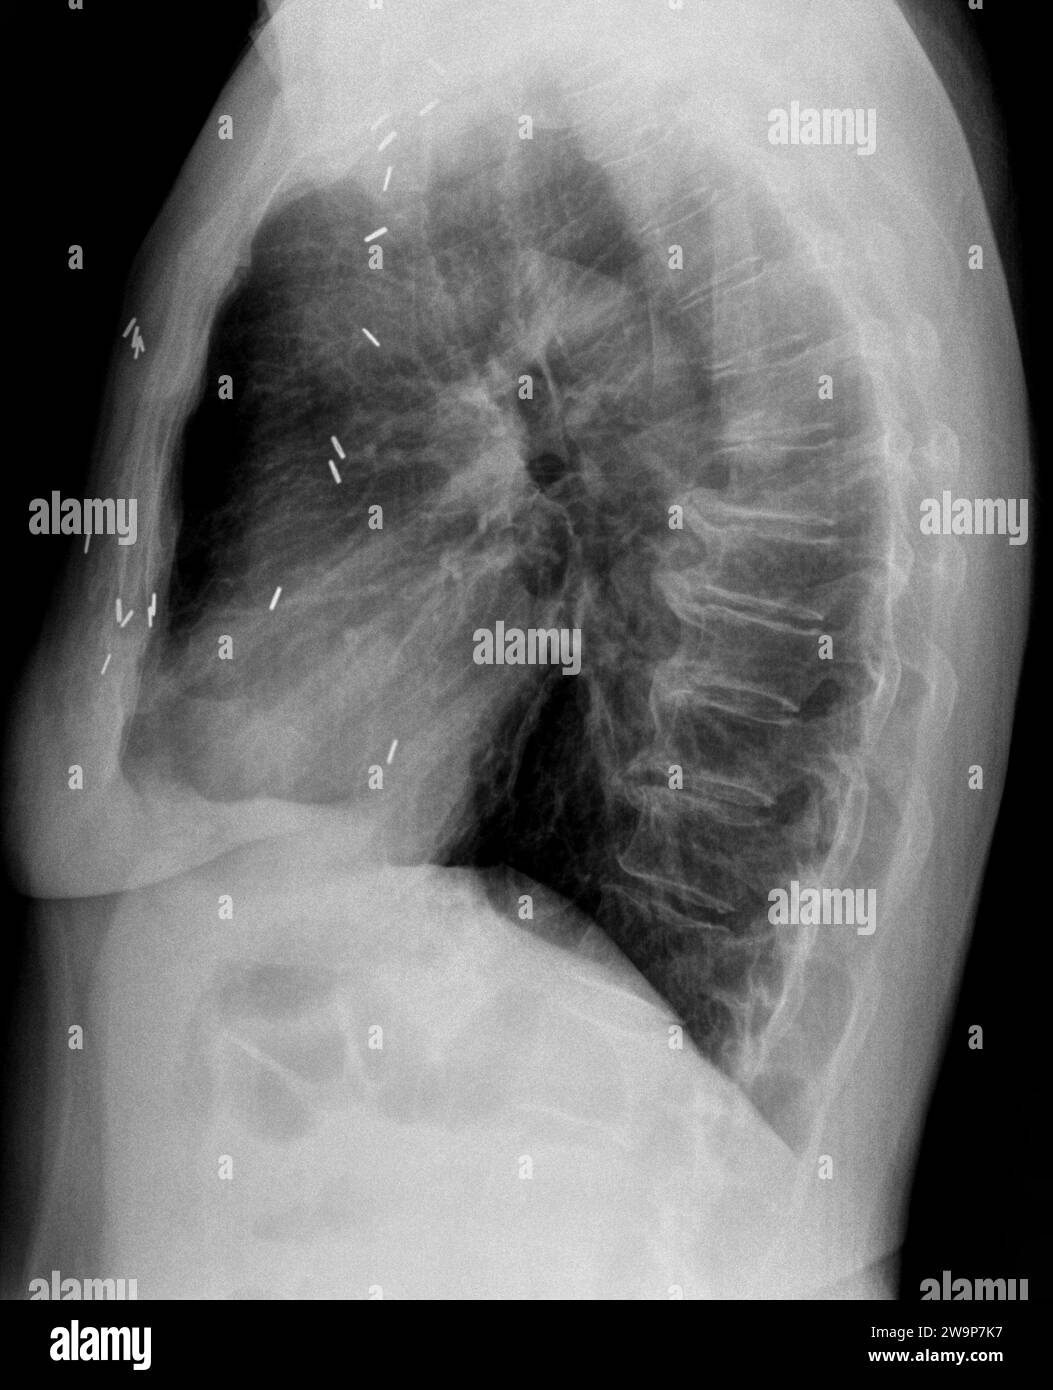 Radiographie ou radiographie filmique d'une vertèbre thoracique médio-dorsale. Vue latérale montrant un artefact d'agrafe chirurgicale résultant d'une chirurgie pulmonaire et d'une dégénérescence du di Banque D'Images